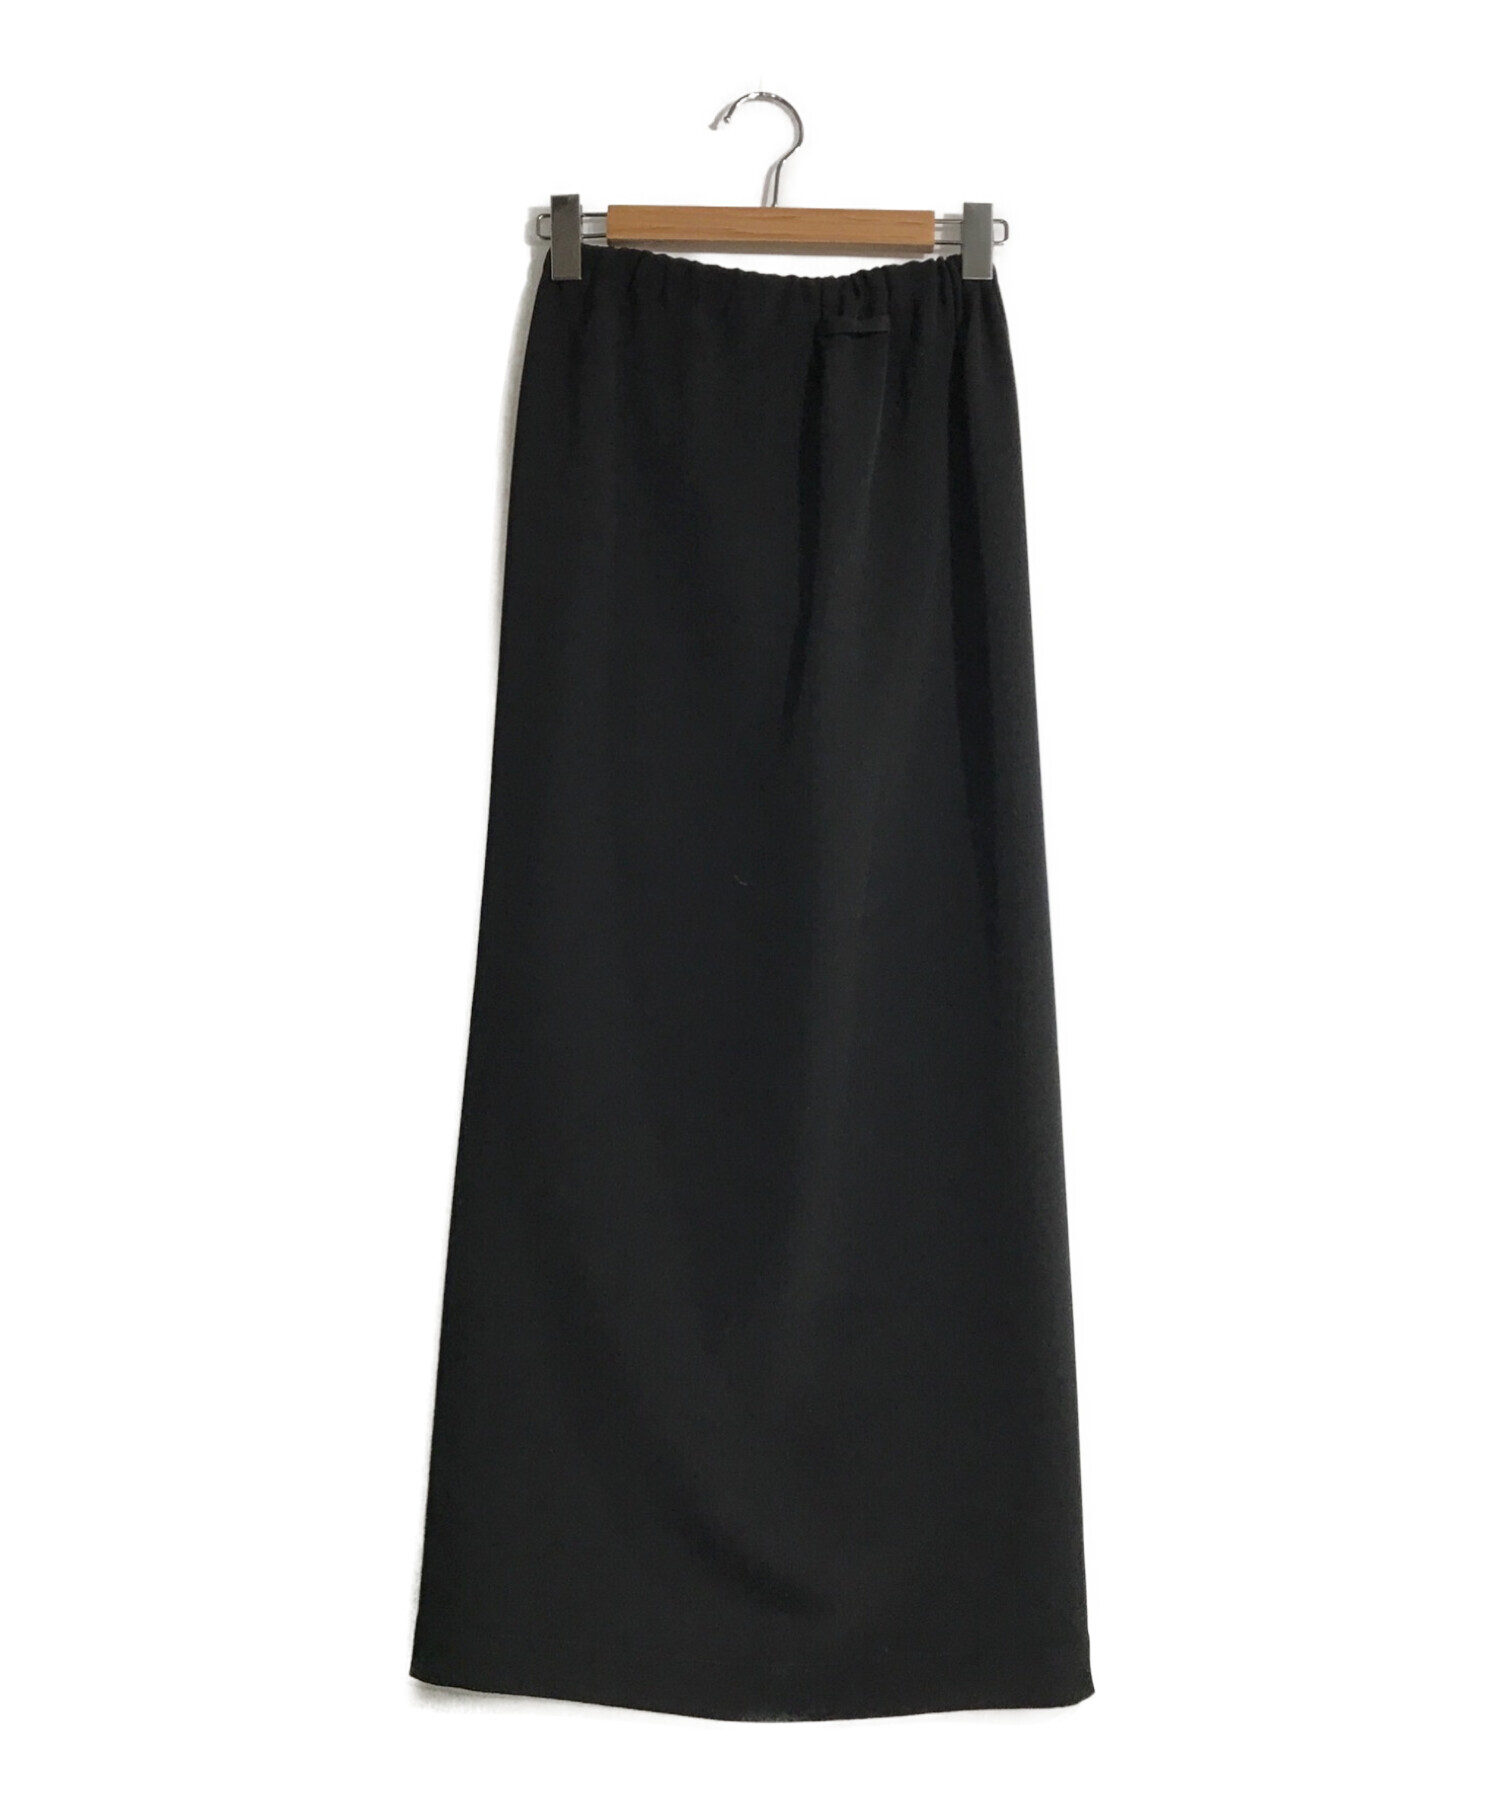 Jean Paul Gaultier FEMME (ジャンポールゴルチェフェム) ロングスカート ブラック サイズ:40